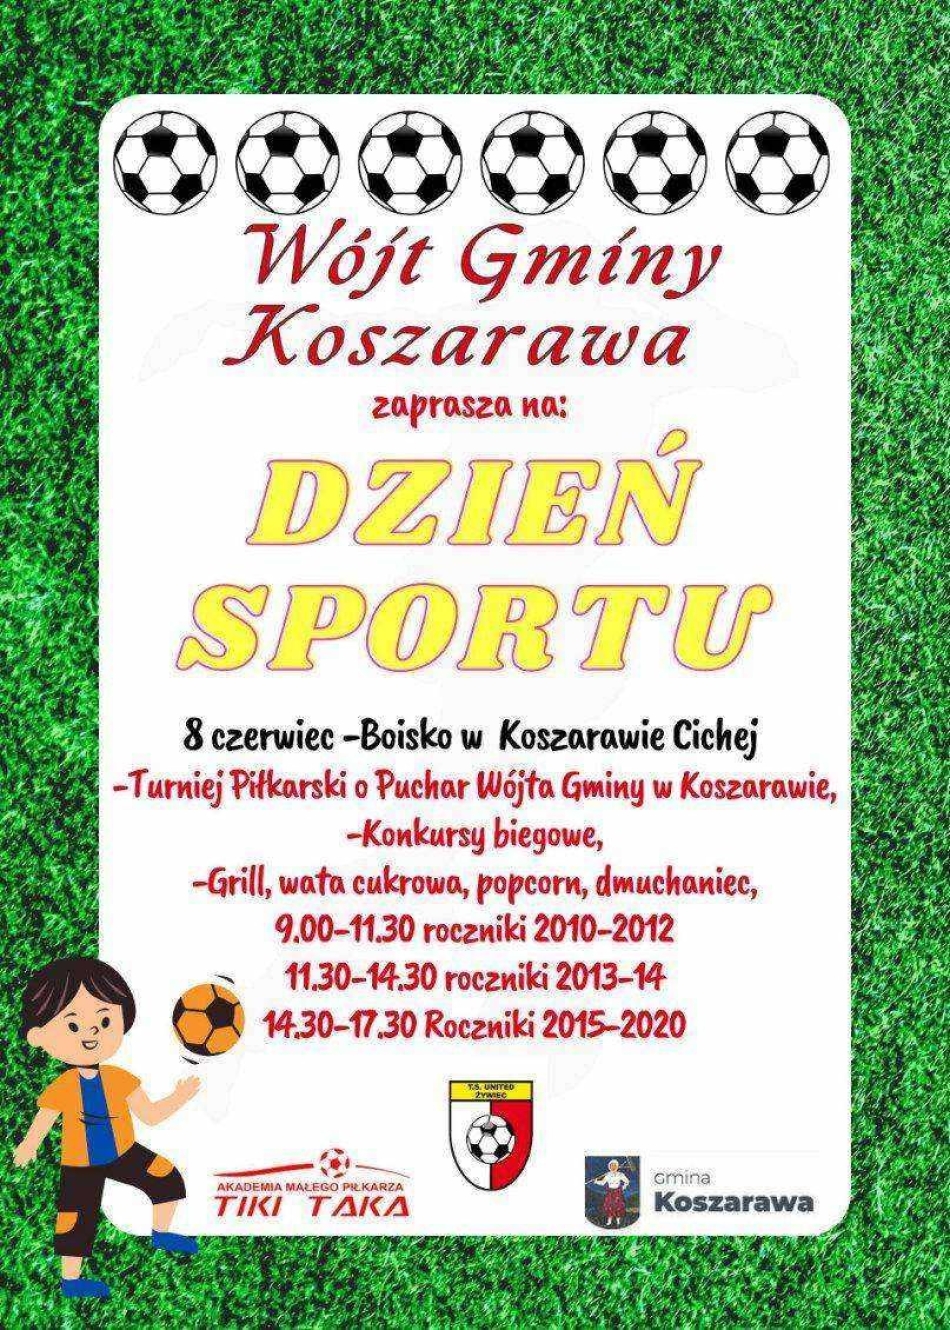 Zaproszenie na Dzień Sportu w Koszarawie